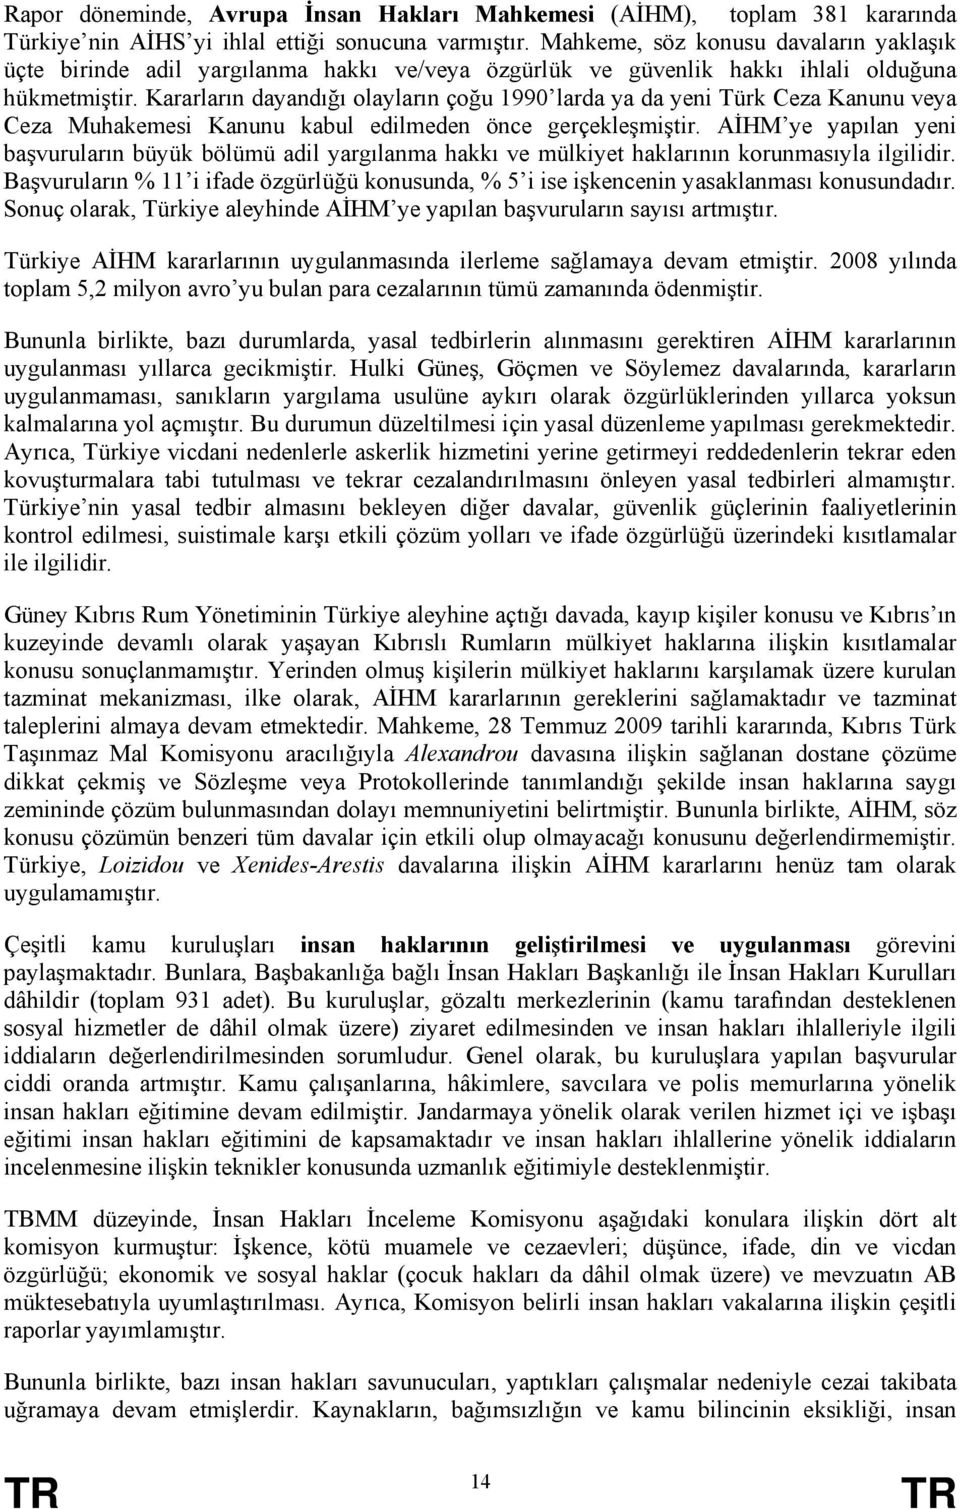 Kararların dayandığı olayların çoğu 1990 larda ya da yeni Türk Ceza Kanunu veya Ceza Muhakemesi Kanunu kabul edilmeden önce gerçekleşmiştir.